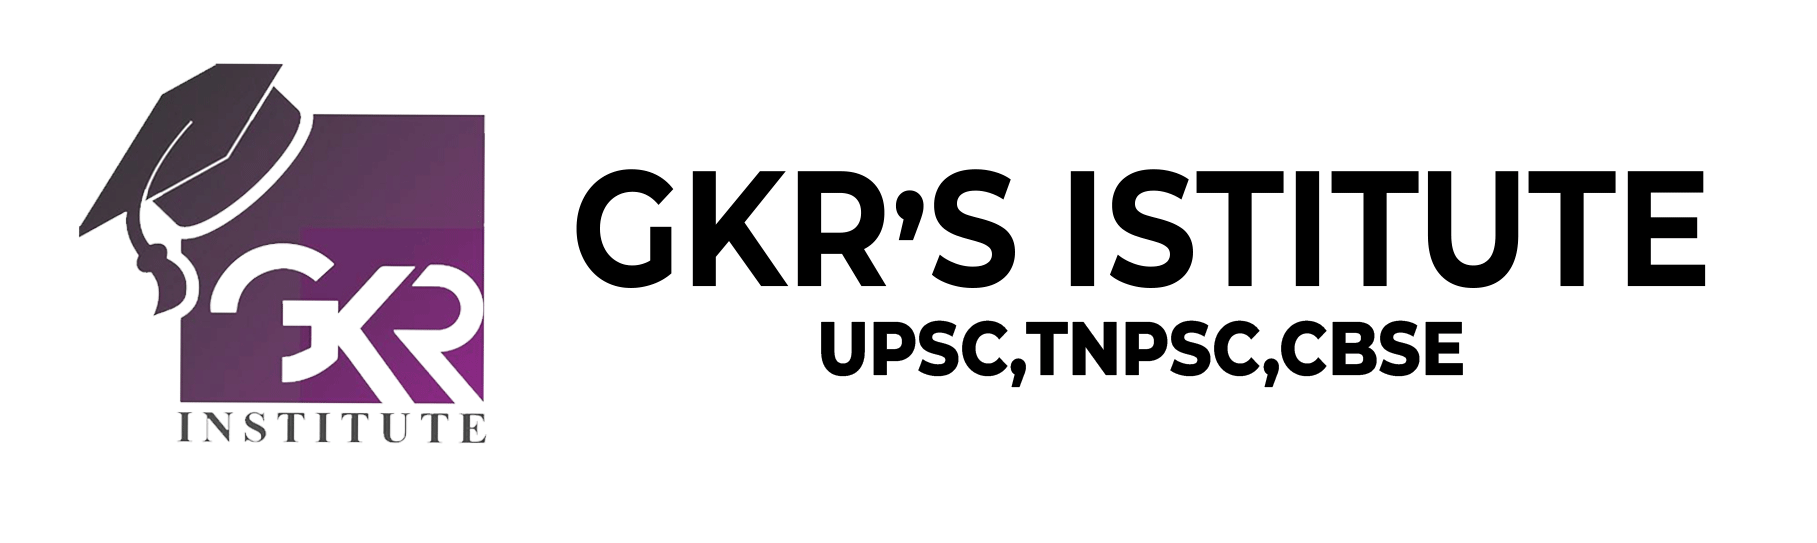 gkr-institute